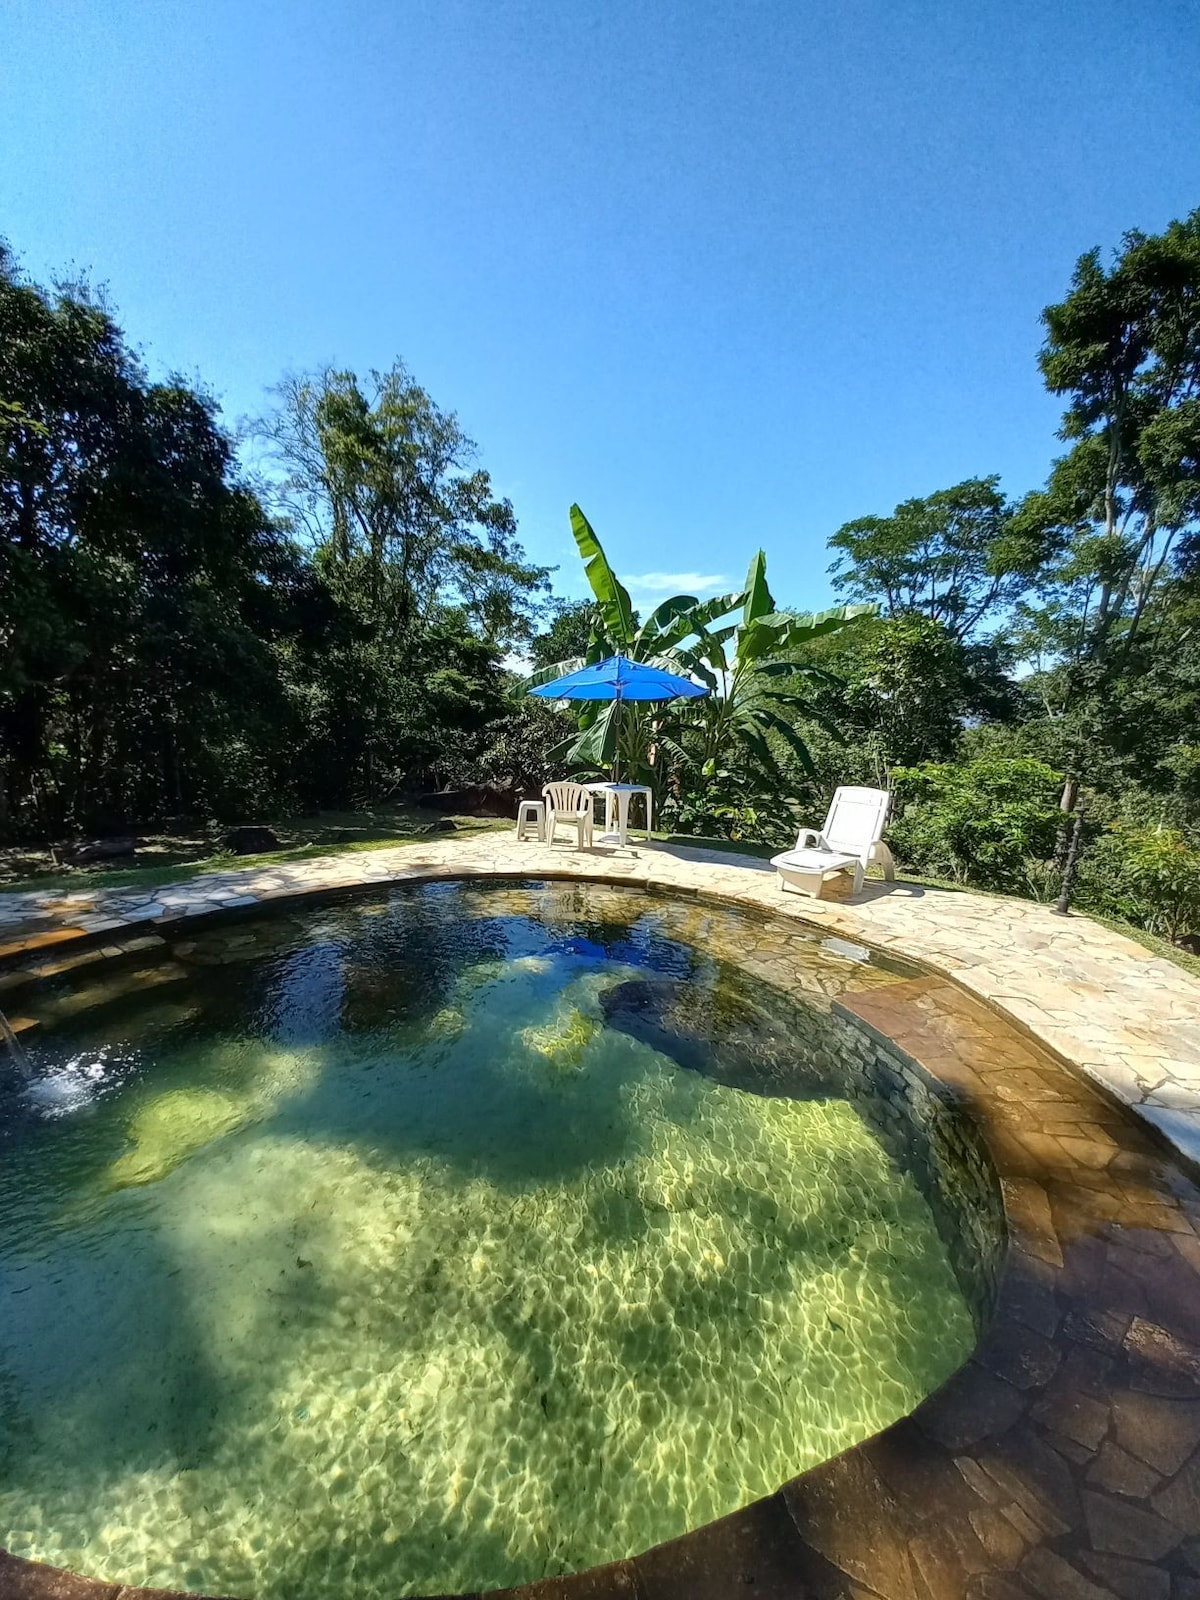 Casa Linda na Floresta com Rio e piscina natural